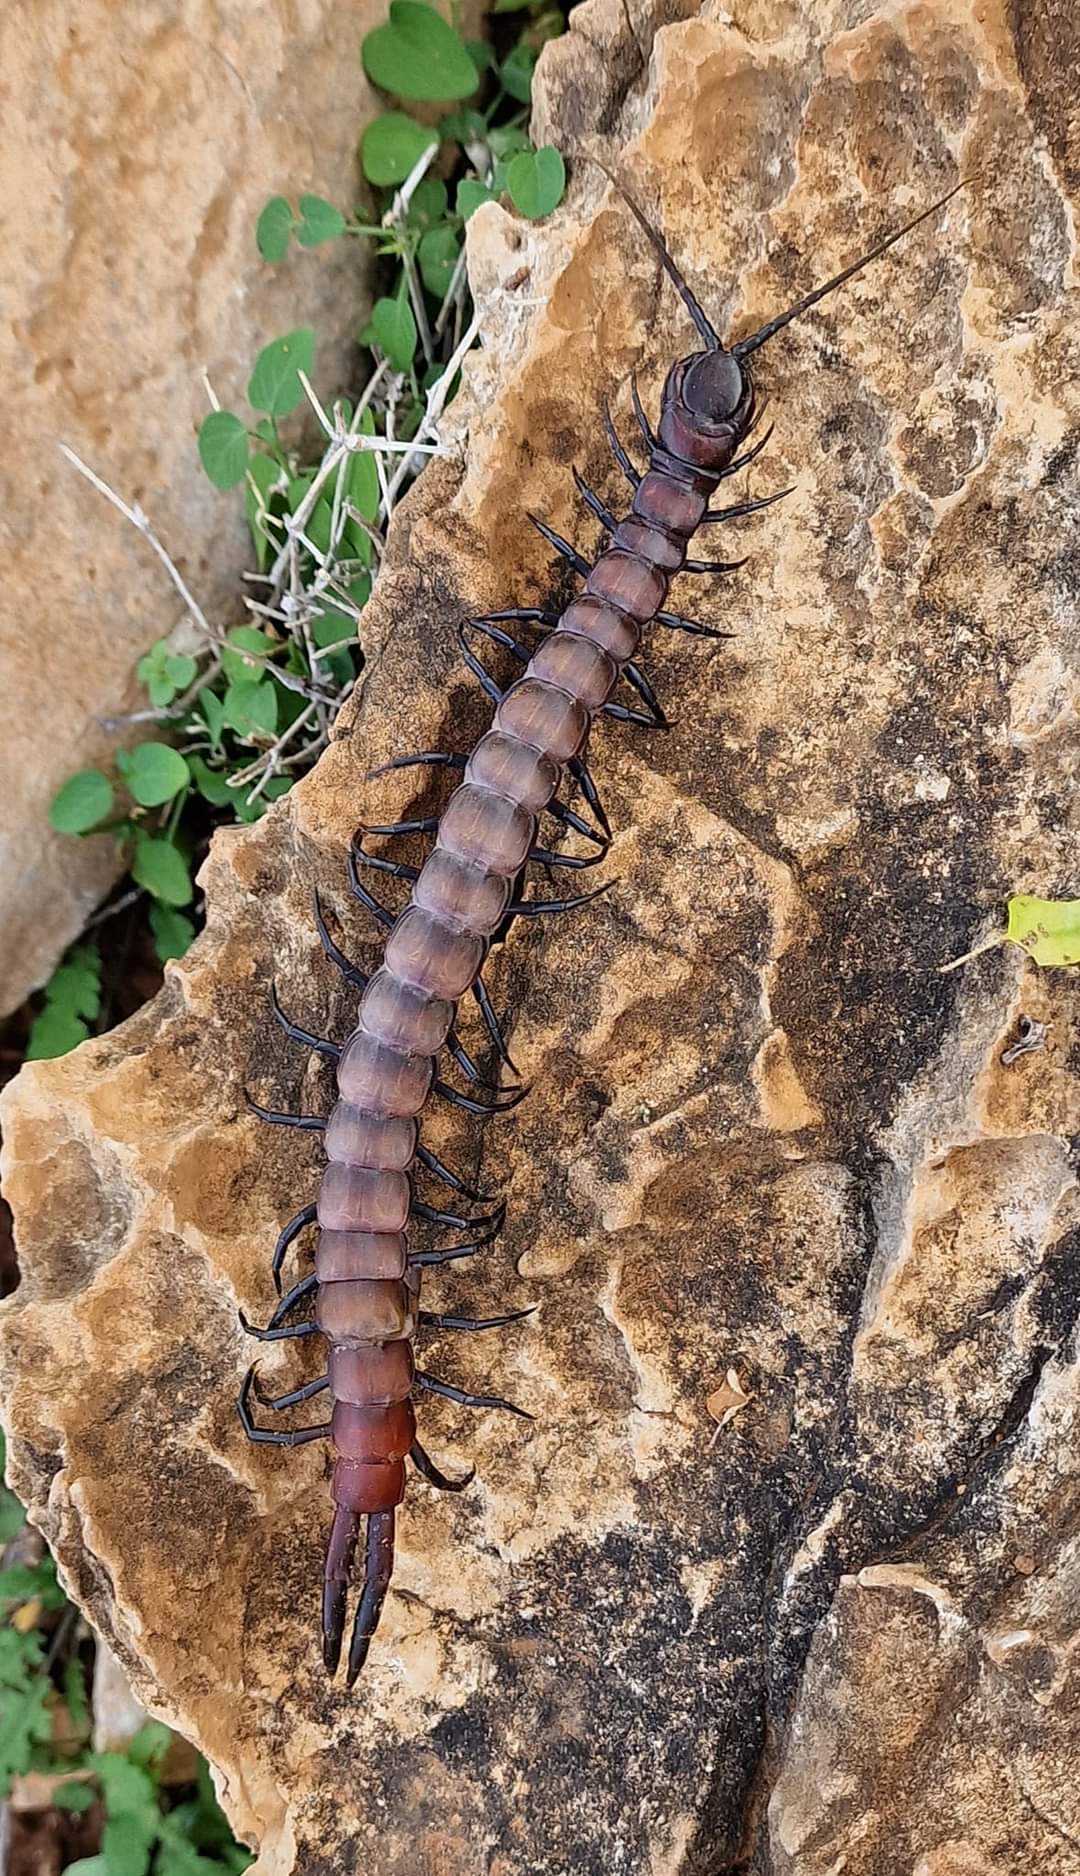 A centipede in Socotra